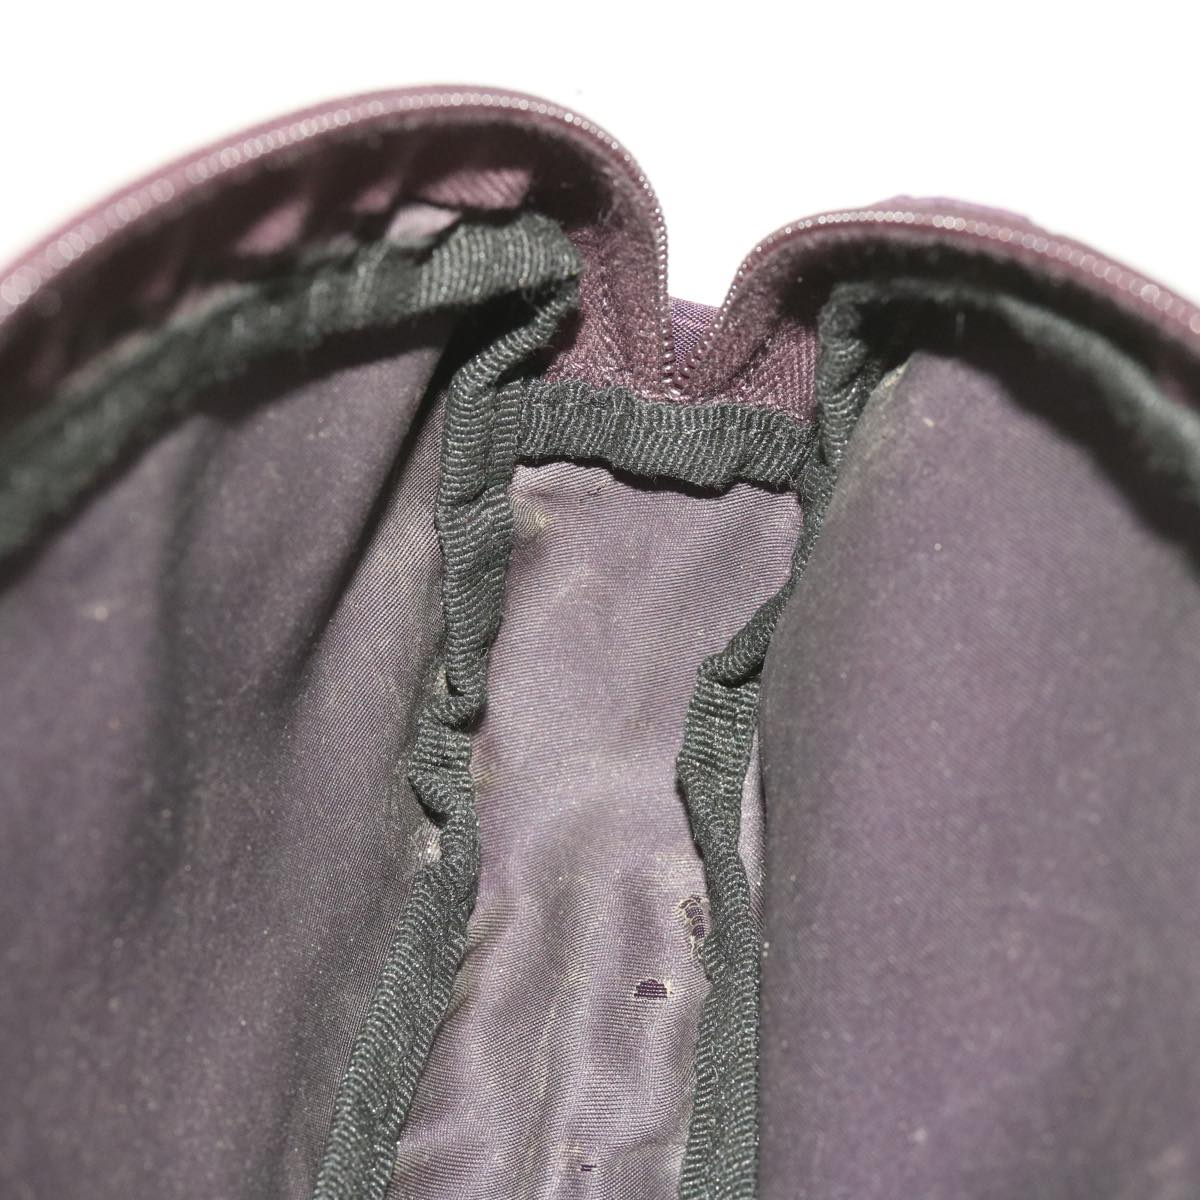 PRADA Slippers Accessory Pouch Nylon Purple Auth 66225